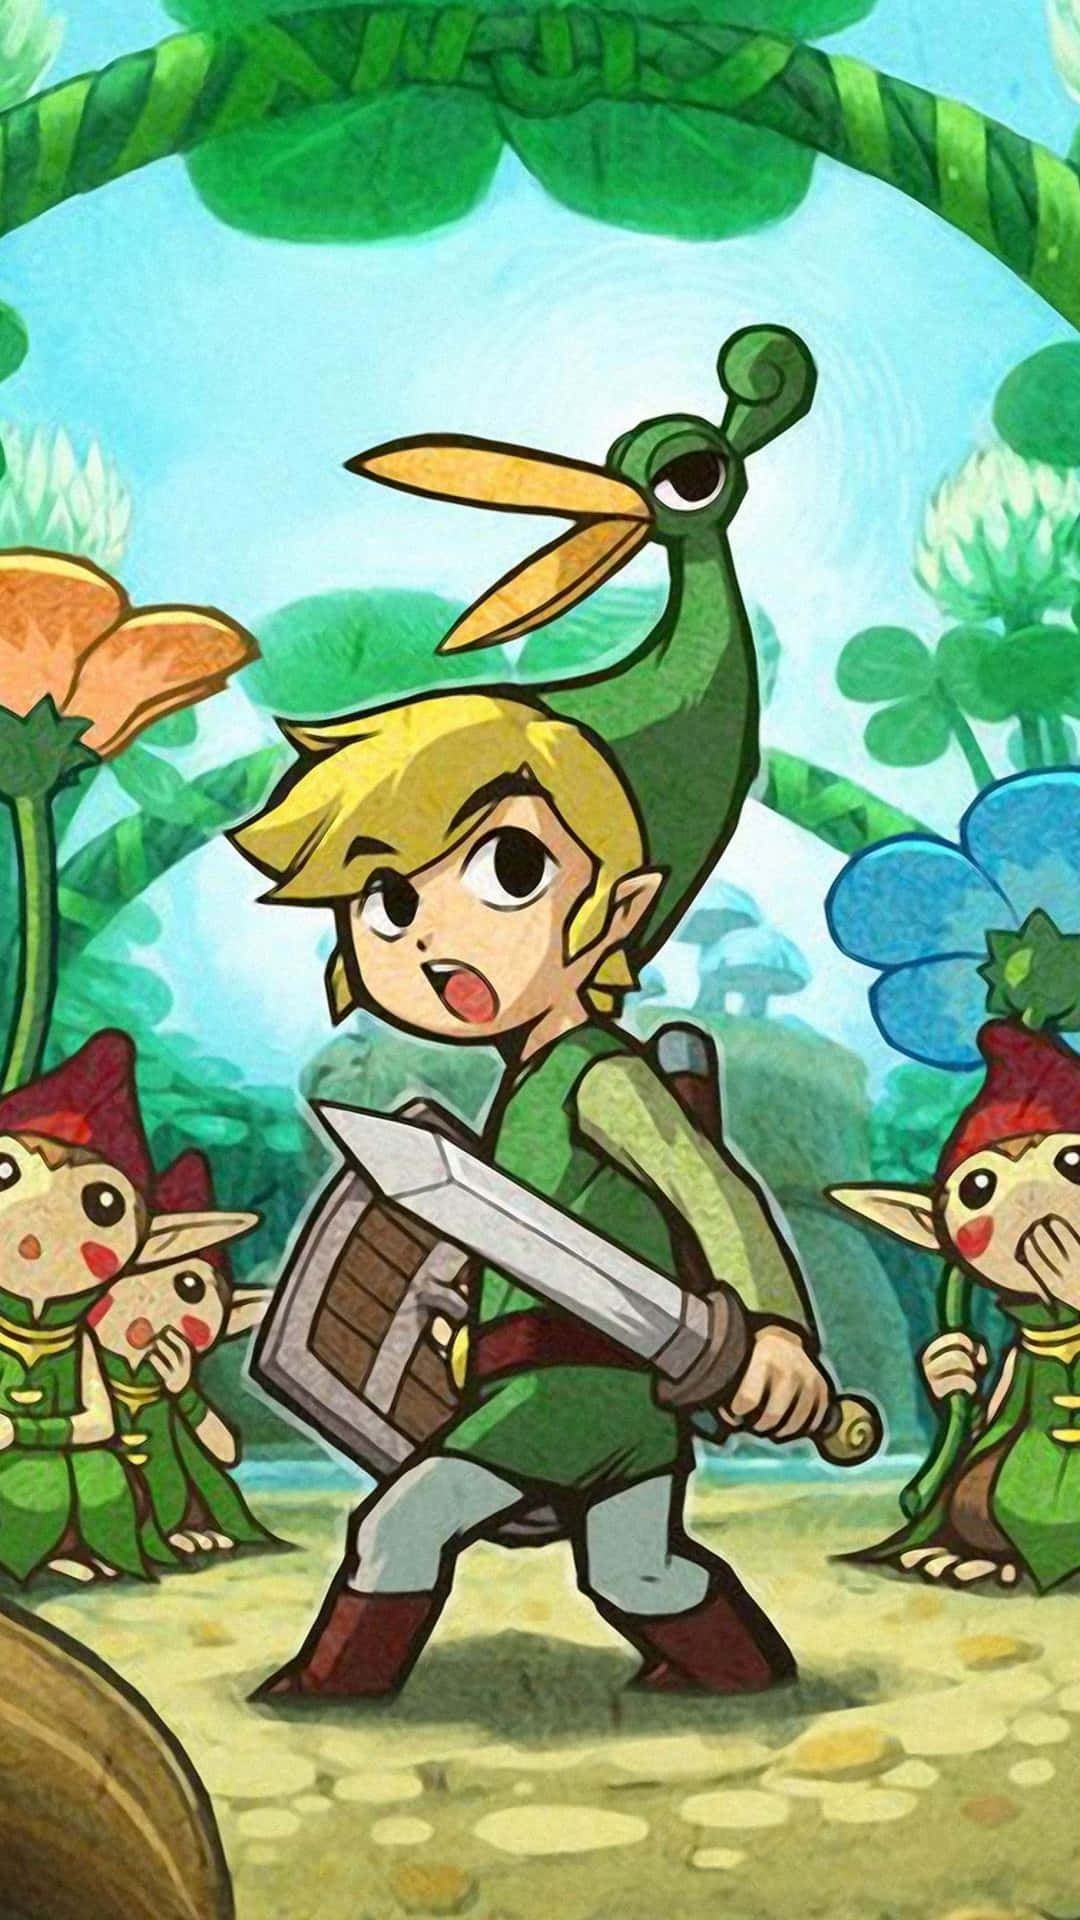 Beundrende udsigt af Toon Link fra spillet The Legend of Zelda. Wallpaper